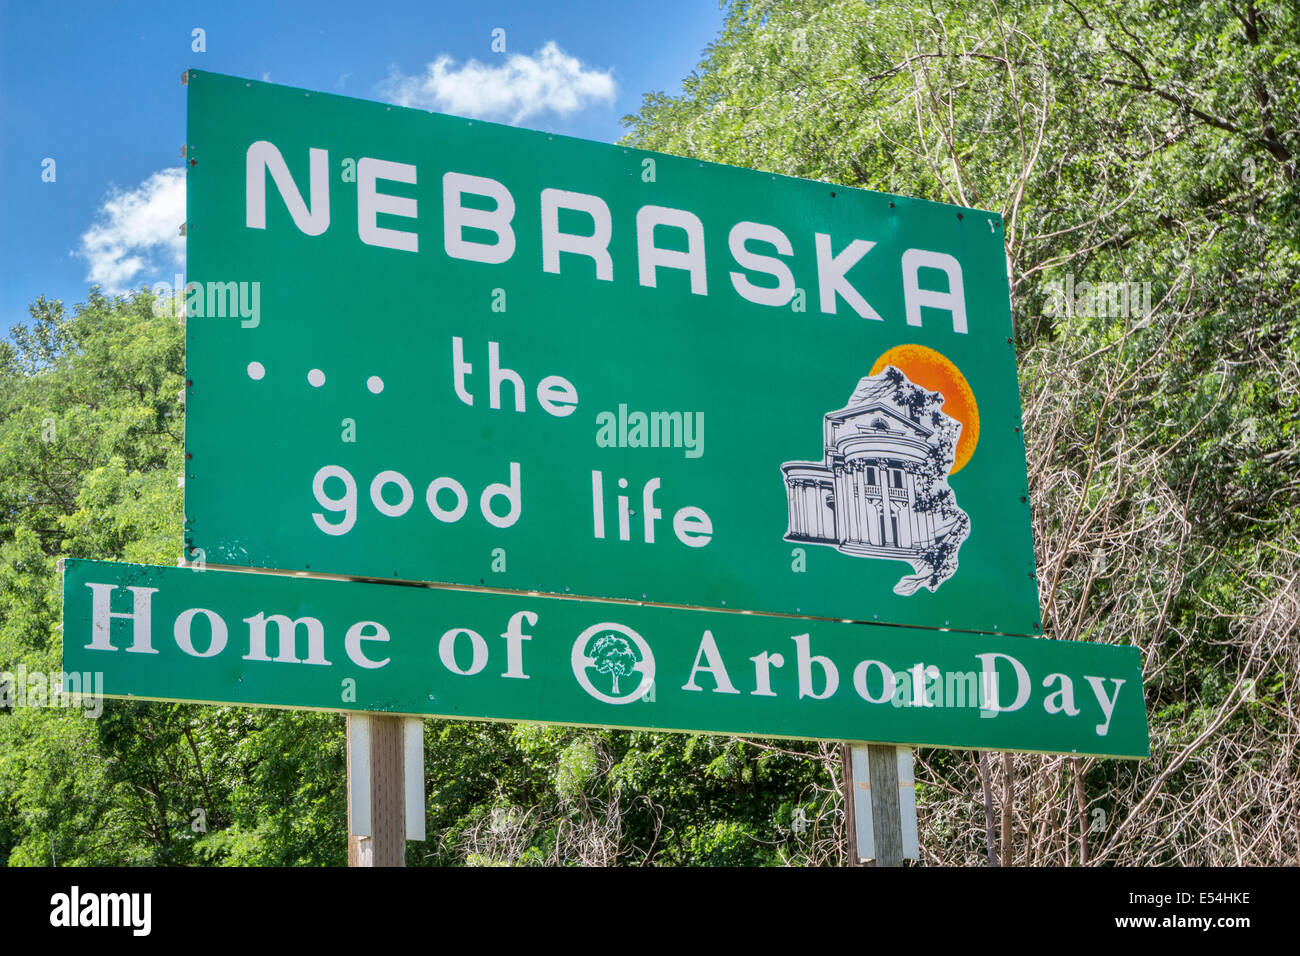 Nebraska, das gute Leben, Heimat der Arbor Day - am Straßenrand Willkommensschild an Staatsgrenze Stockfoto